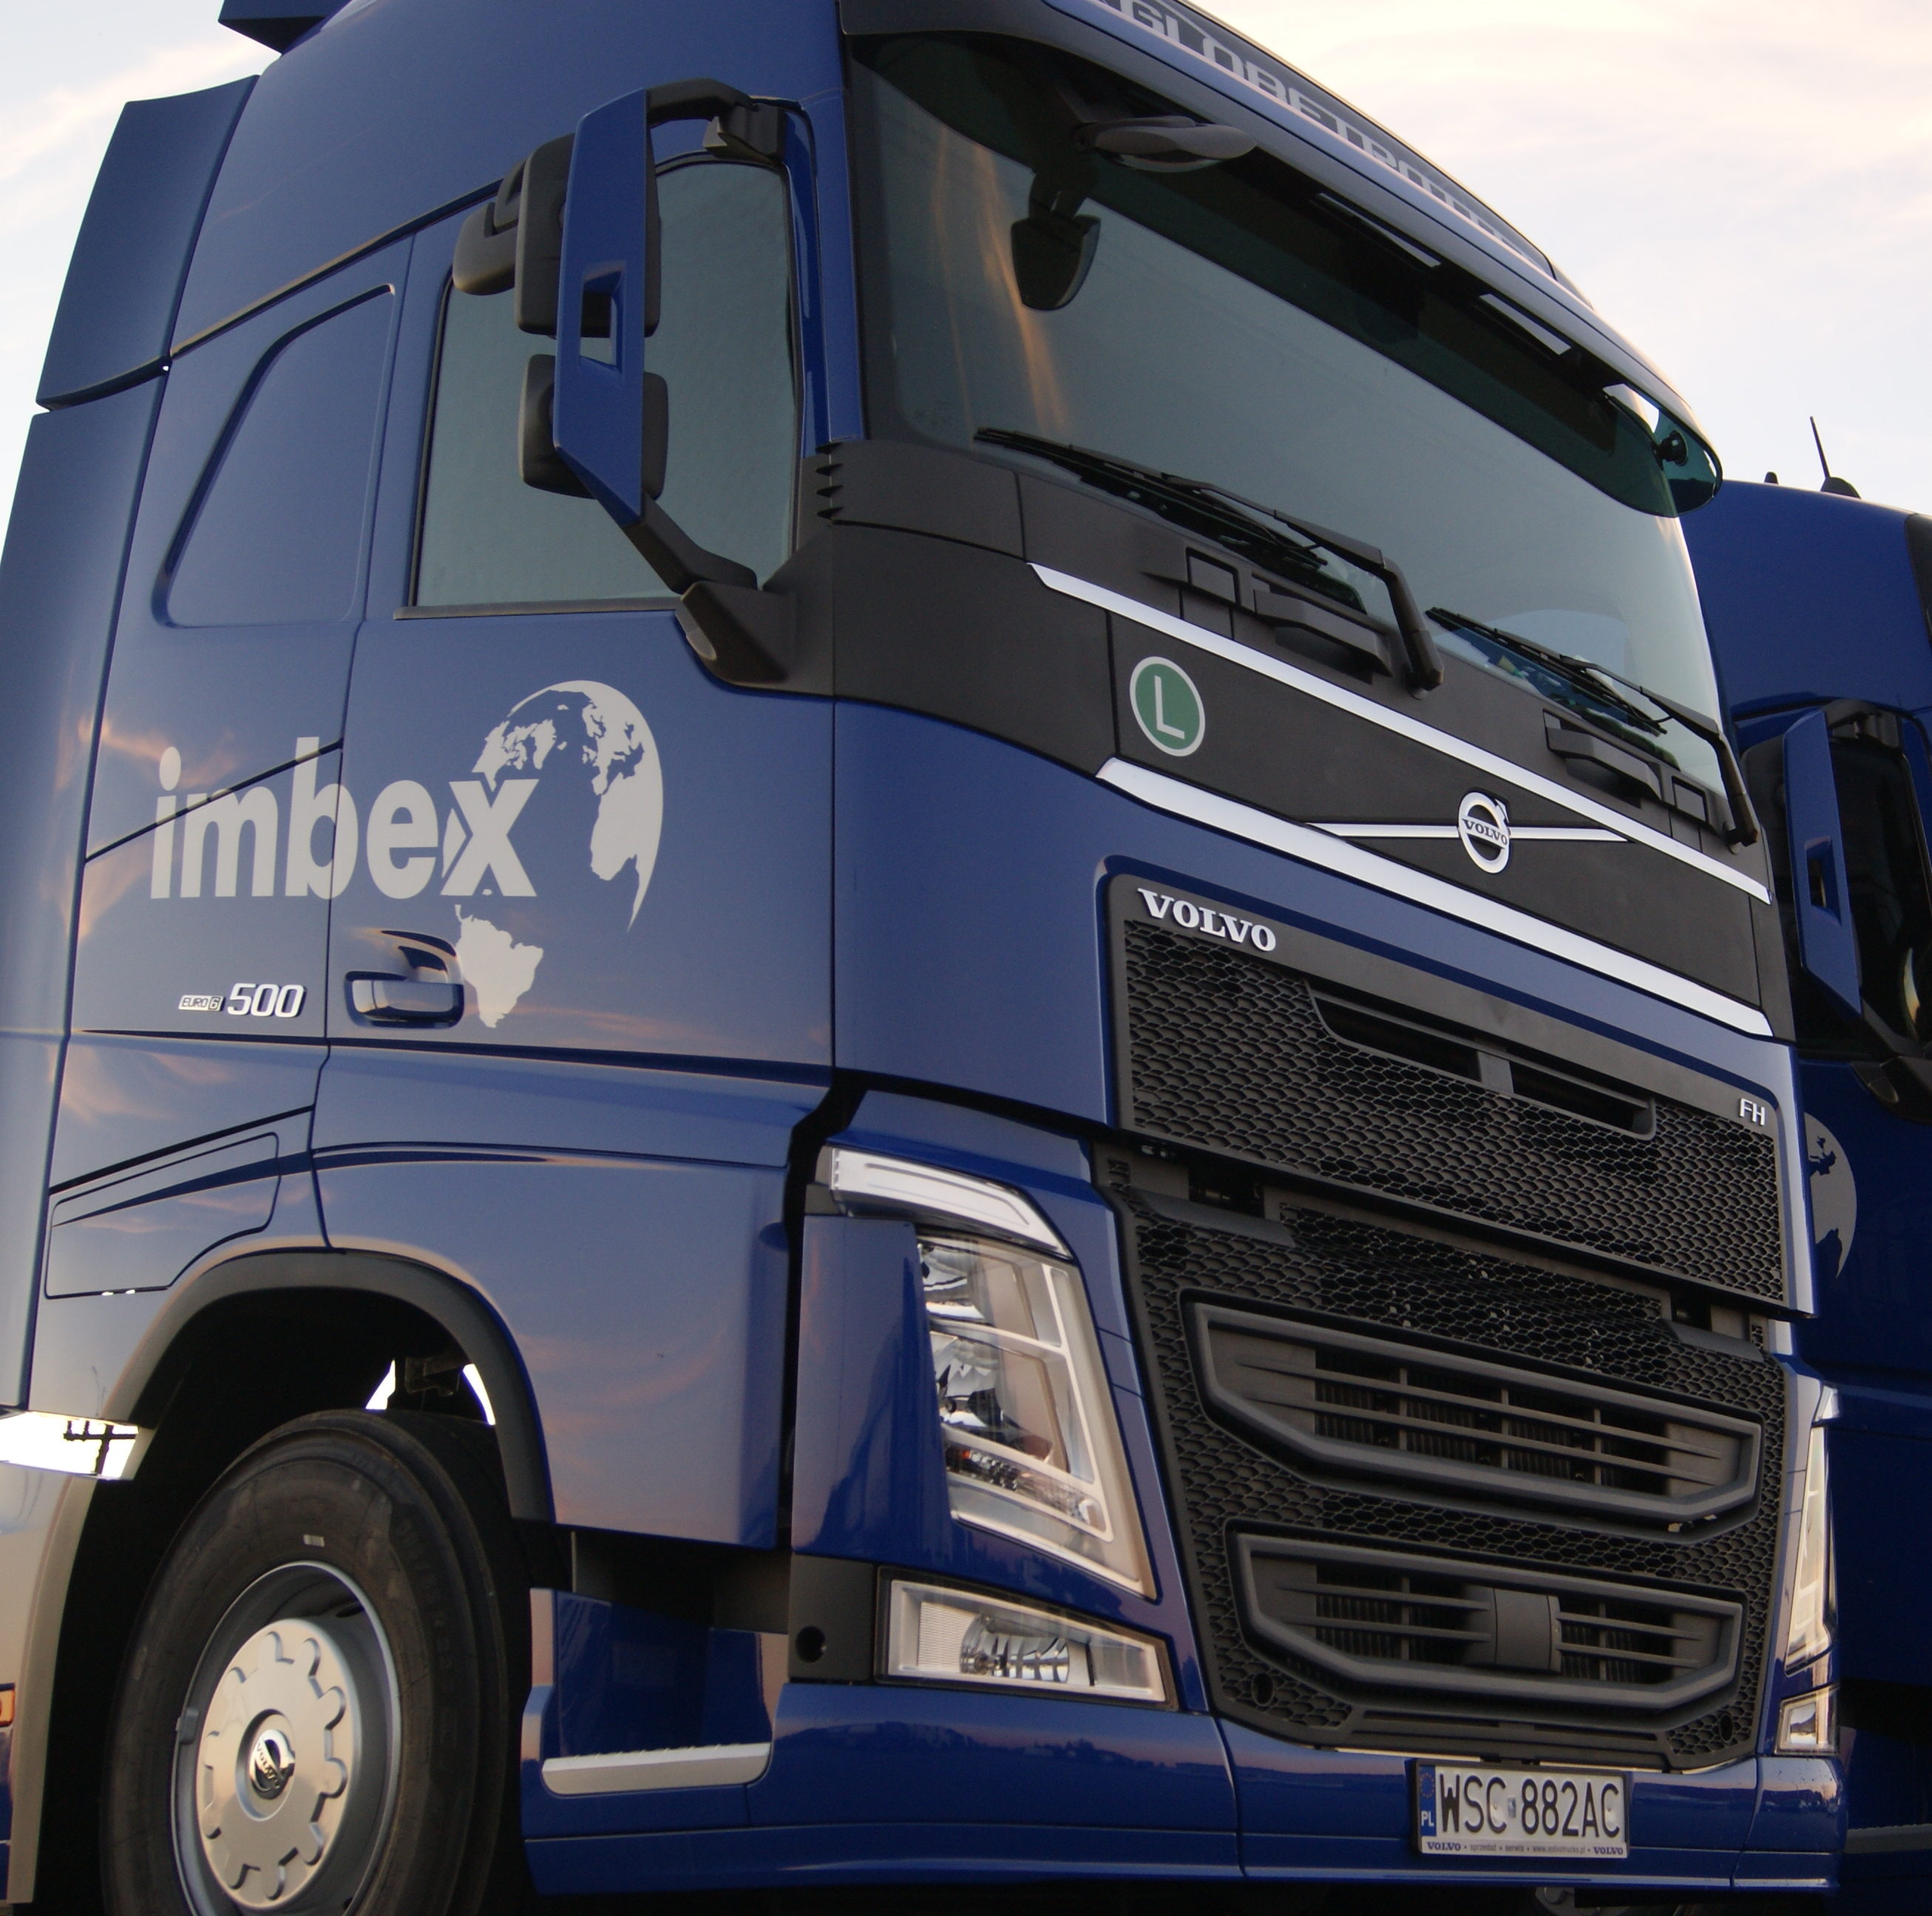 Imbex Firma transportowa